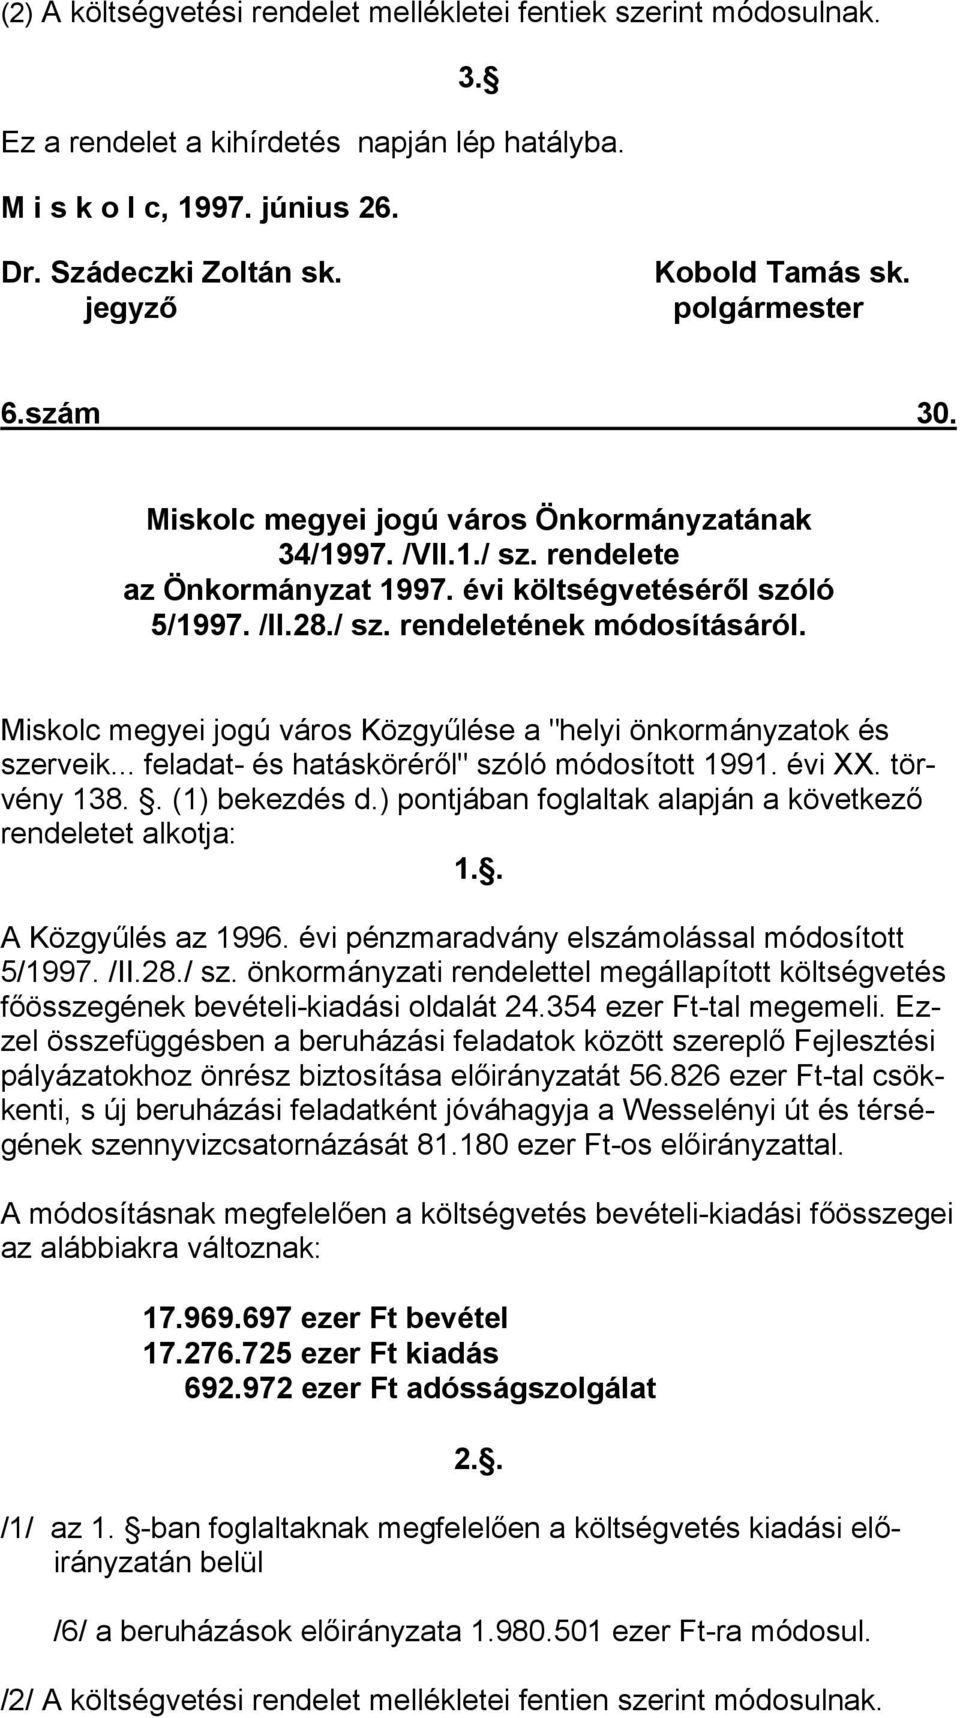 Miskolc megyei jogú város Közgyűlése a "helyi önkormányzatok és szerveik... feladat- és hatásköréről" szóló módosított 1991. évi XX. törvény 138.. (1) bekezdés d.